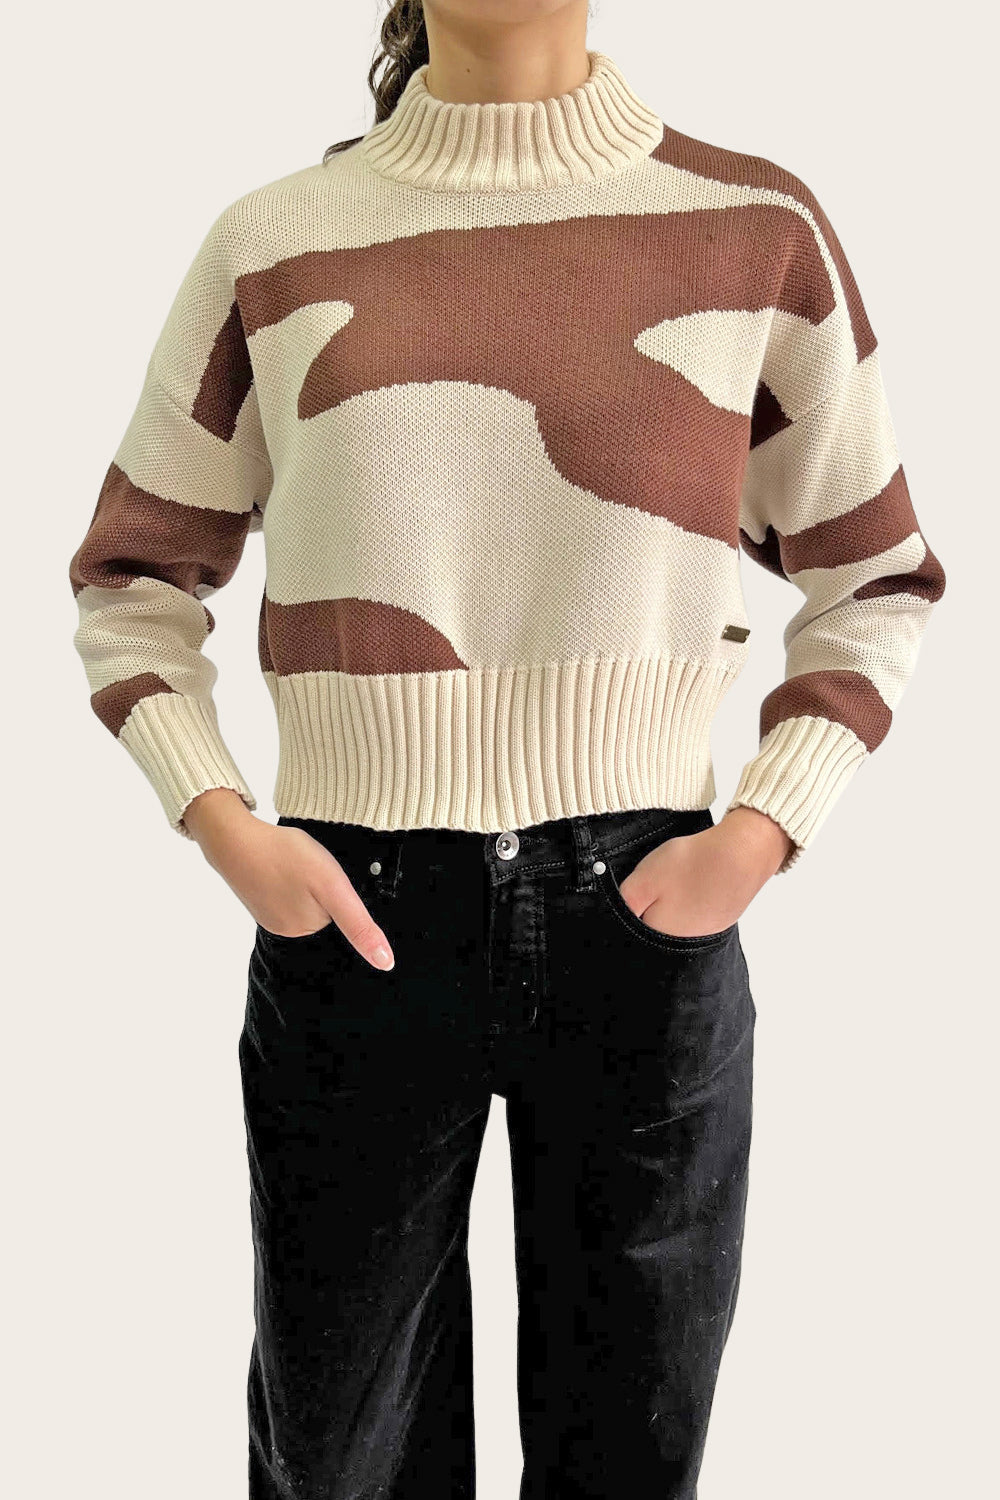 Sweater Cuello Alto Orgánico Mujer Café